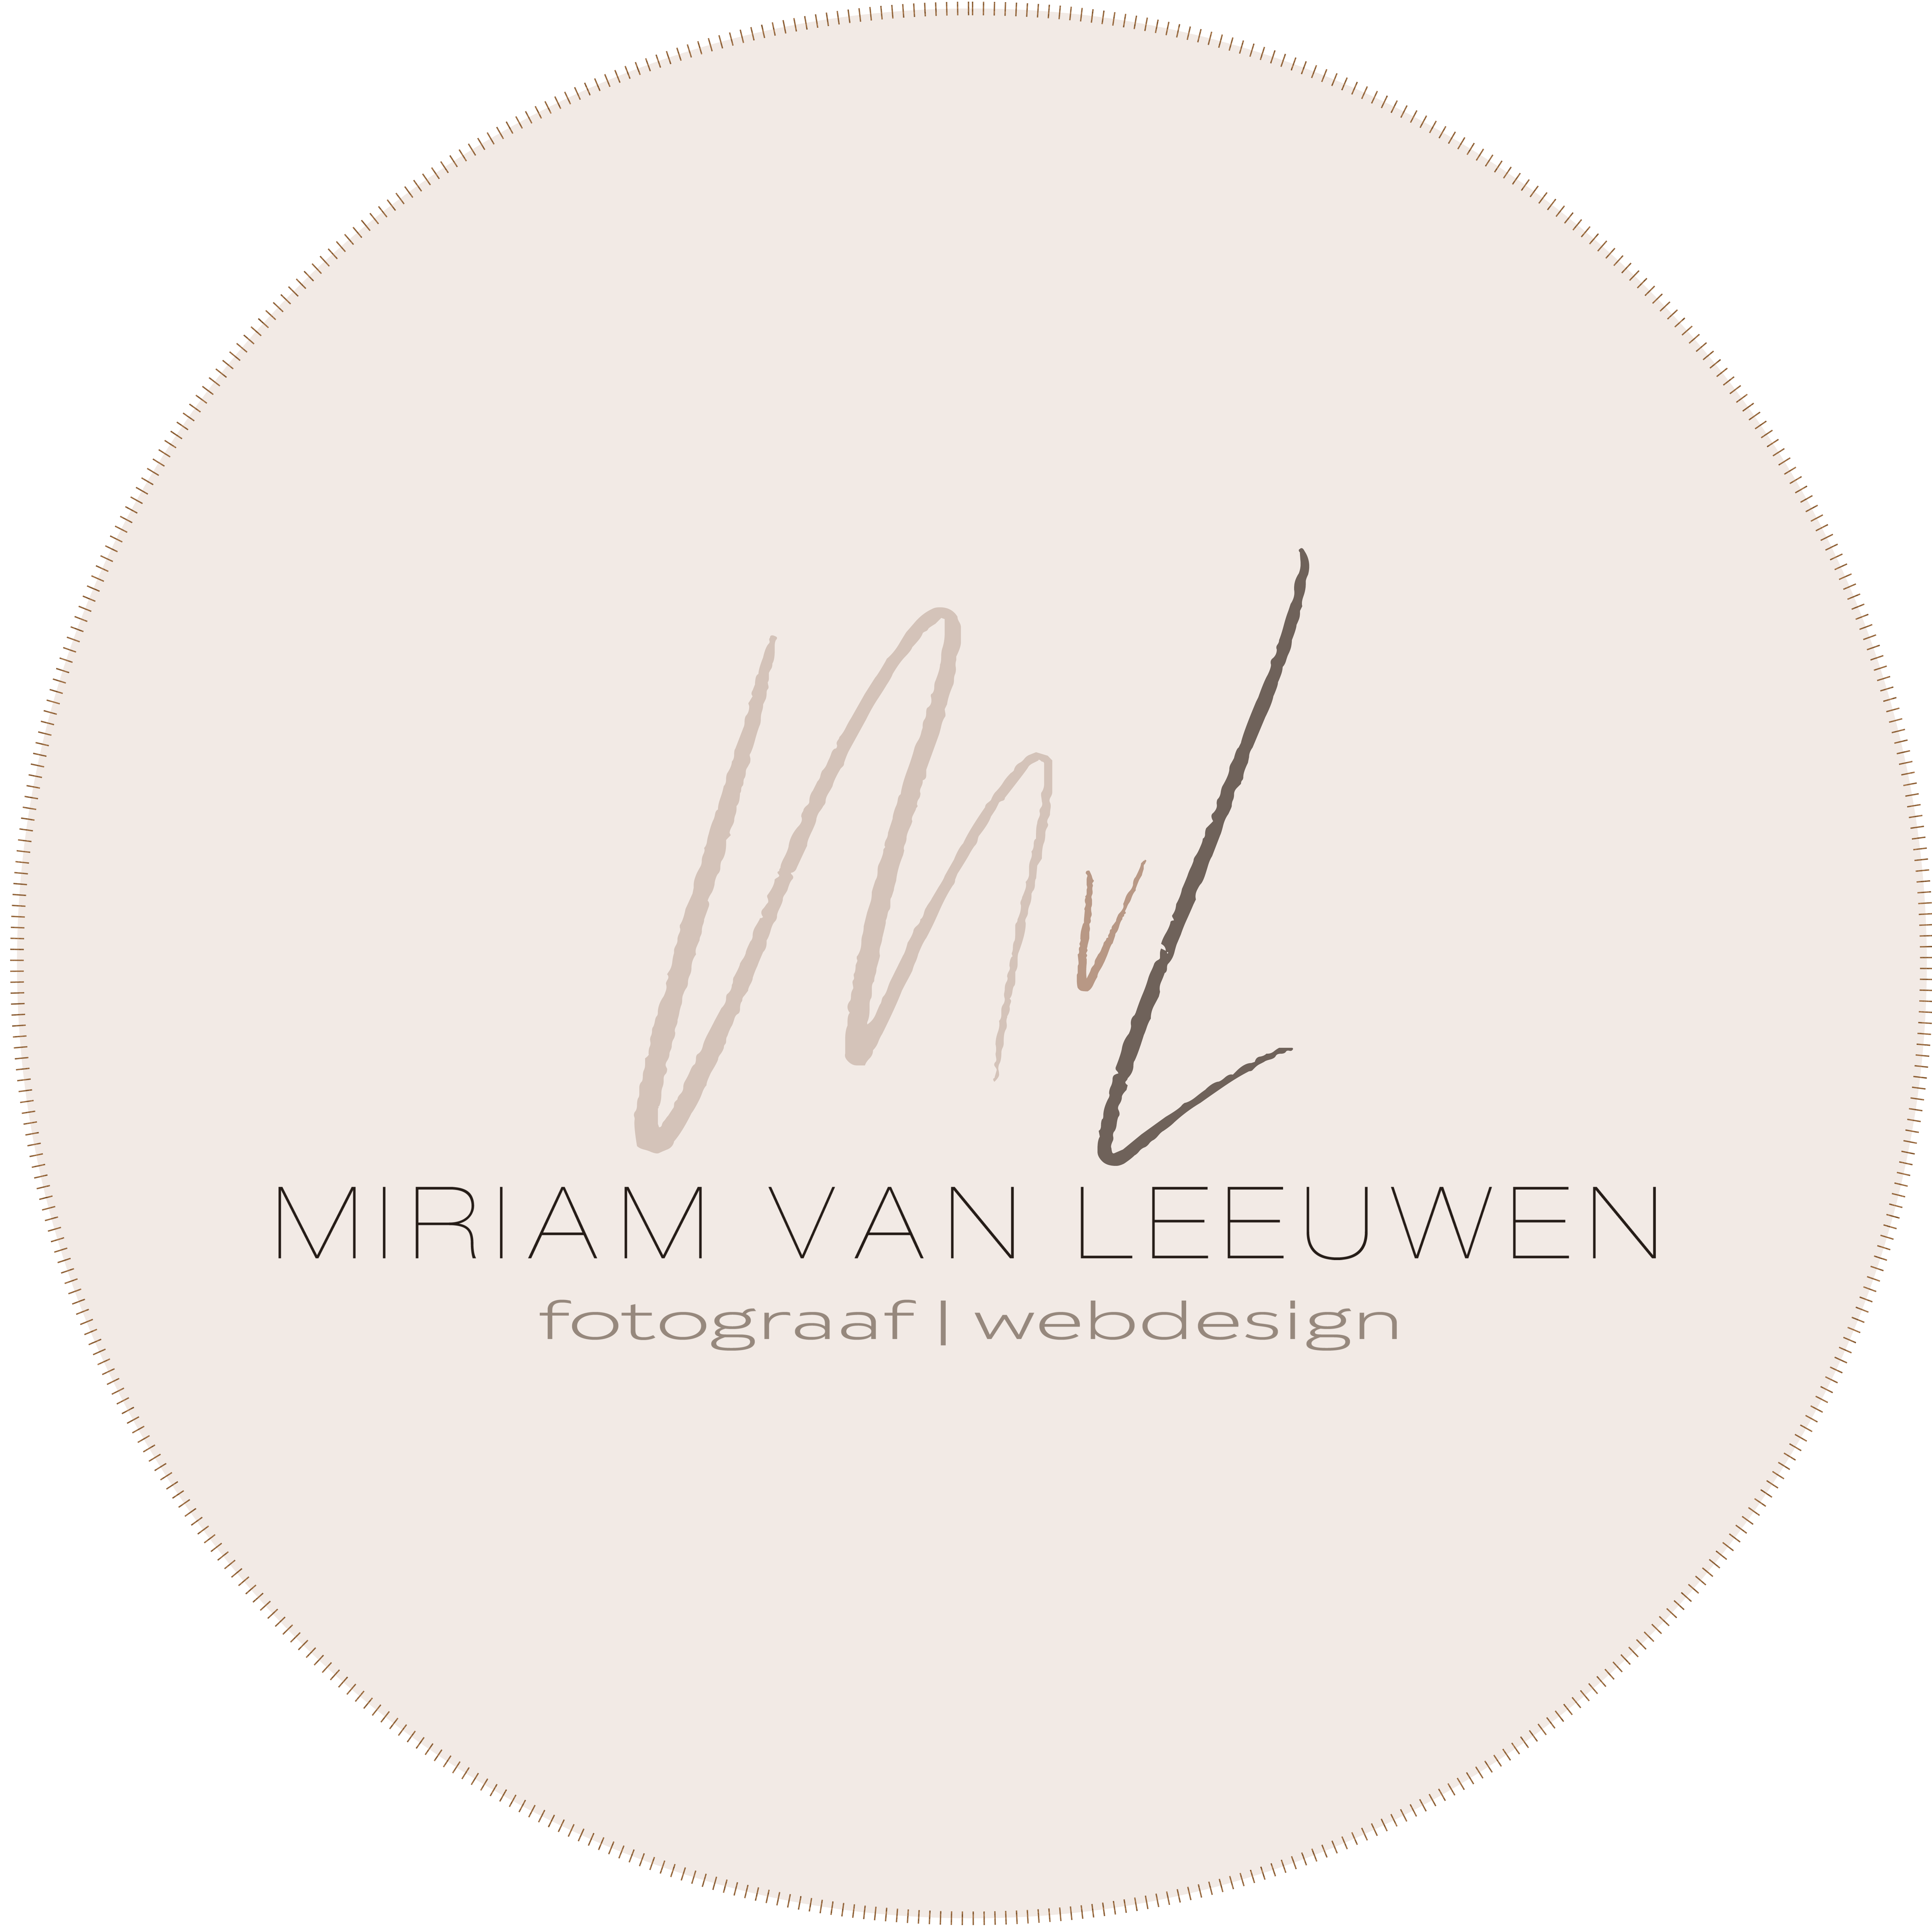 Miriam van Leeuwen fotografie | Fotograaf | Portret | Familieportret| Bedrijfsfotografie | Houten | Utrecht |